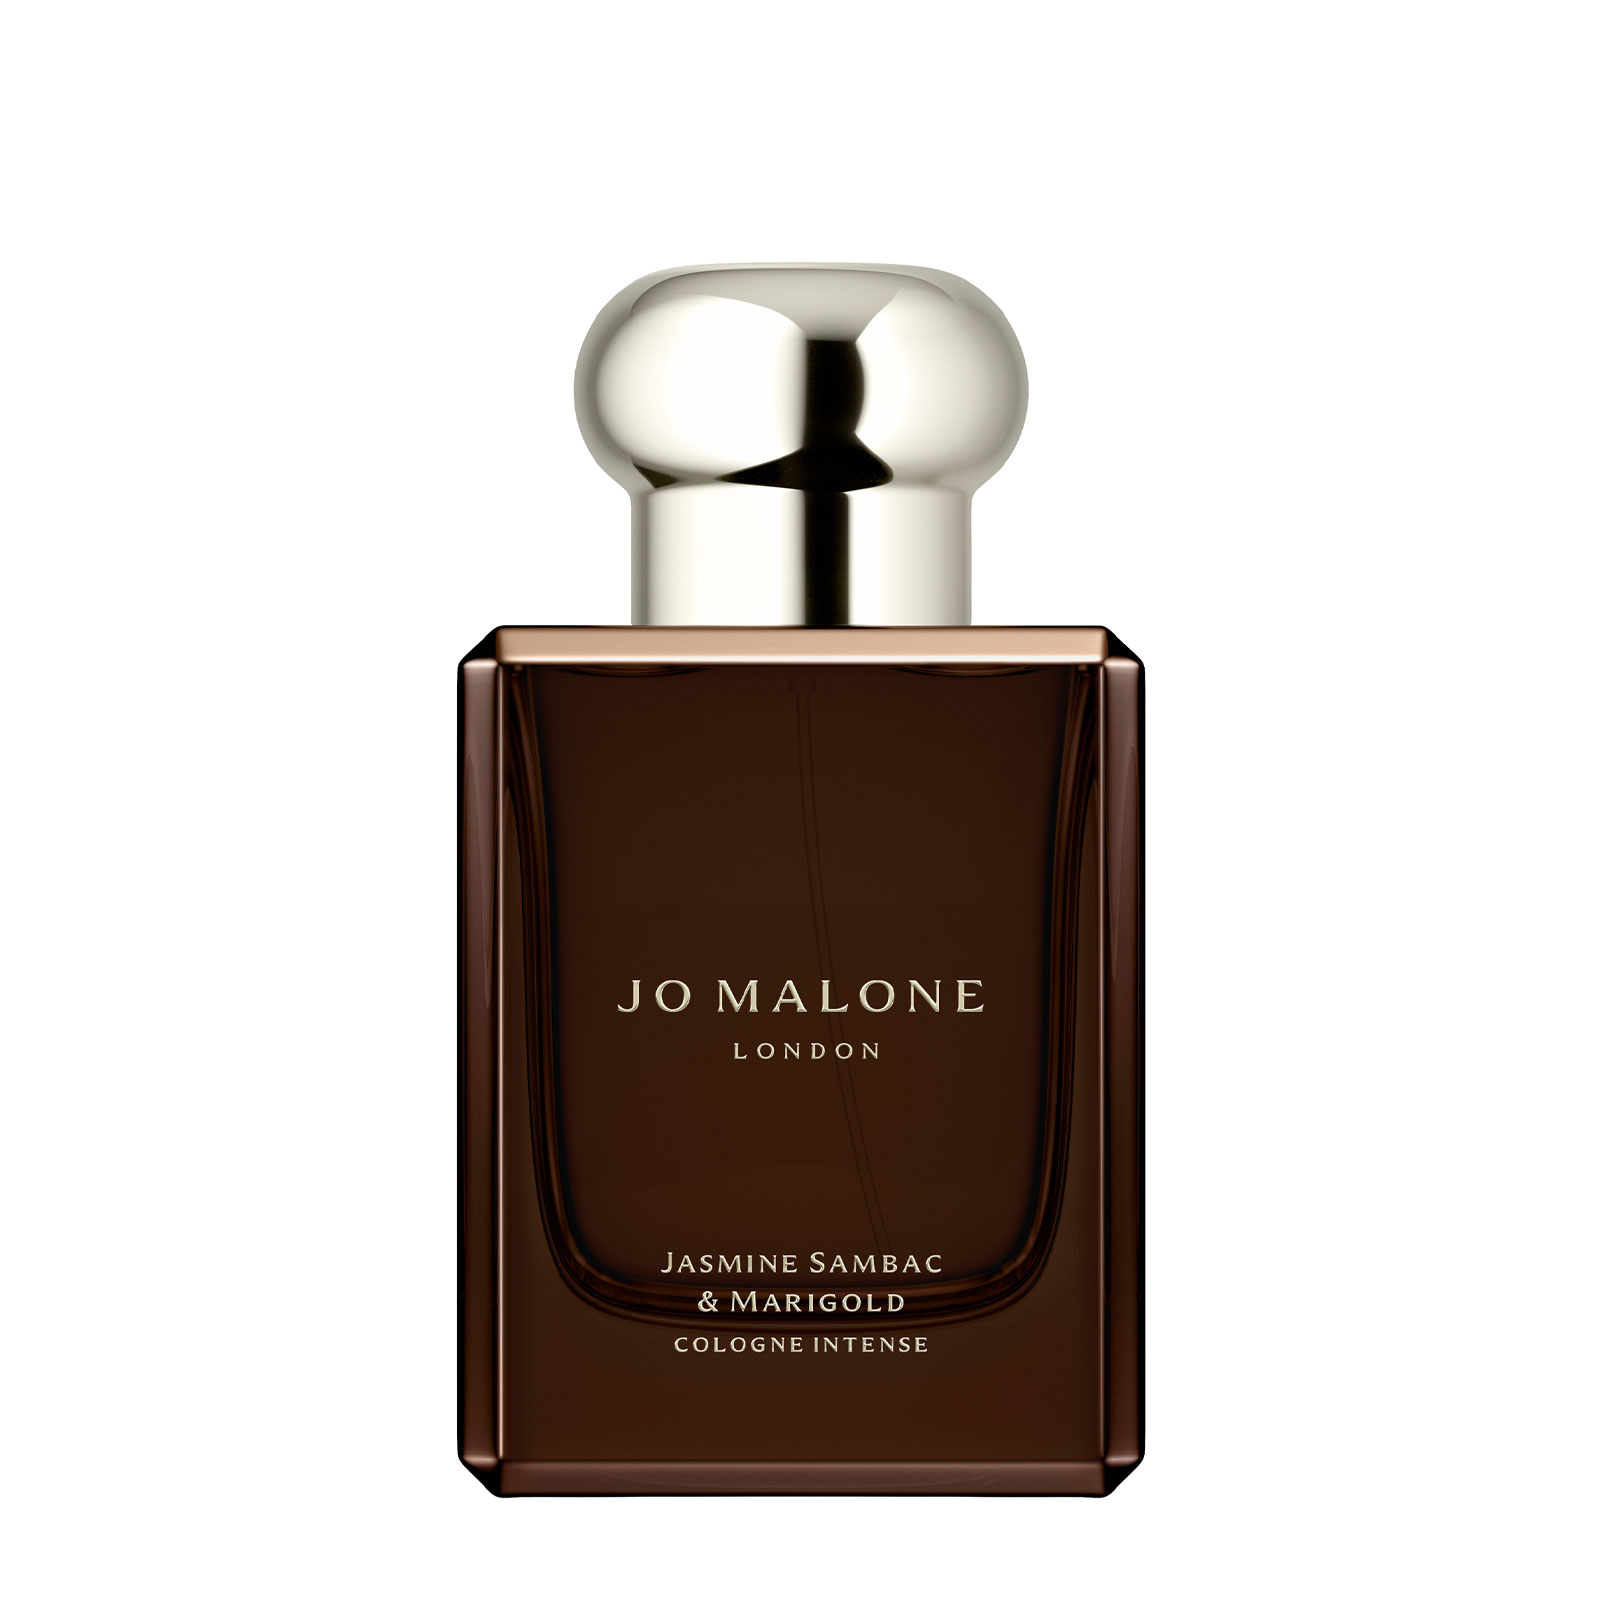 Jo Malone London Jasmine Sambac & Marigold Cologne Intense 50Ml